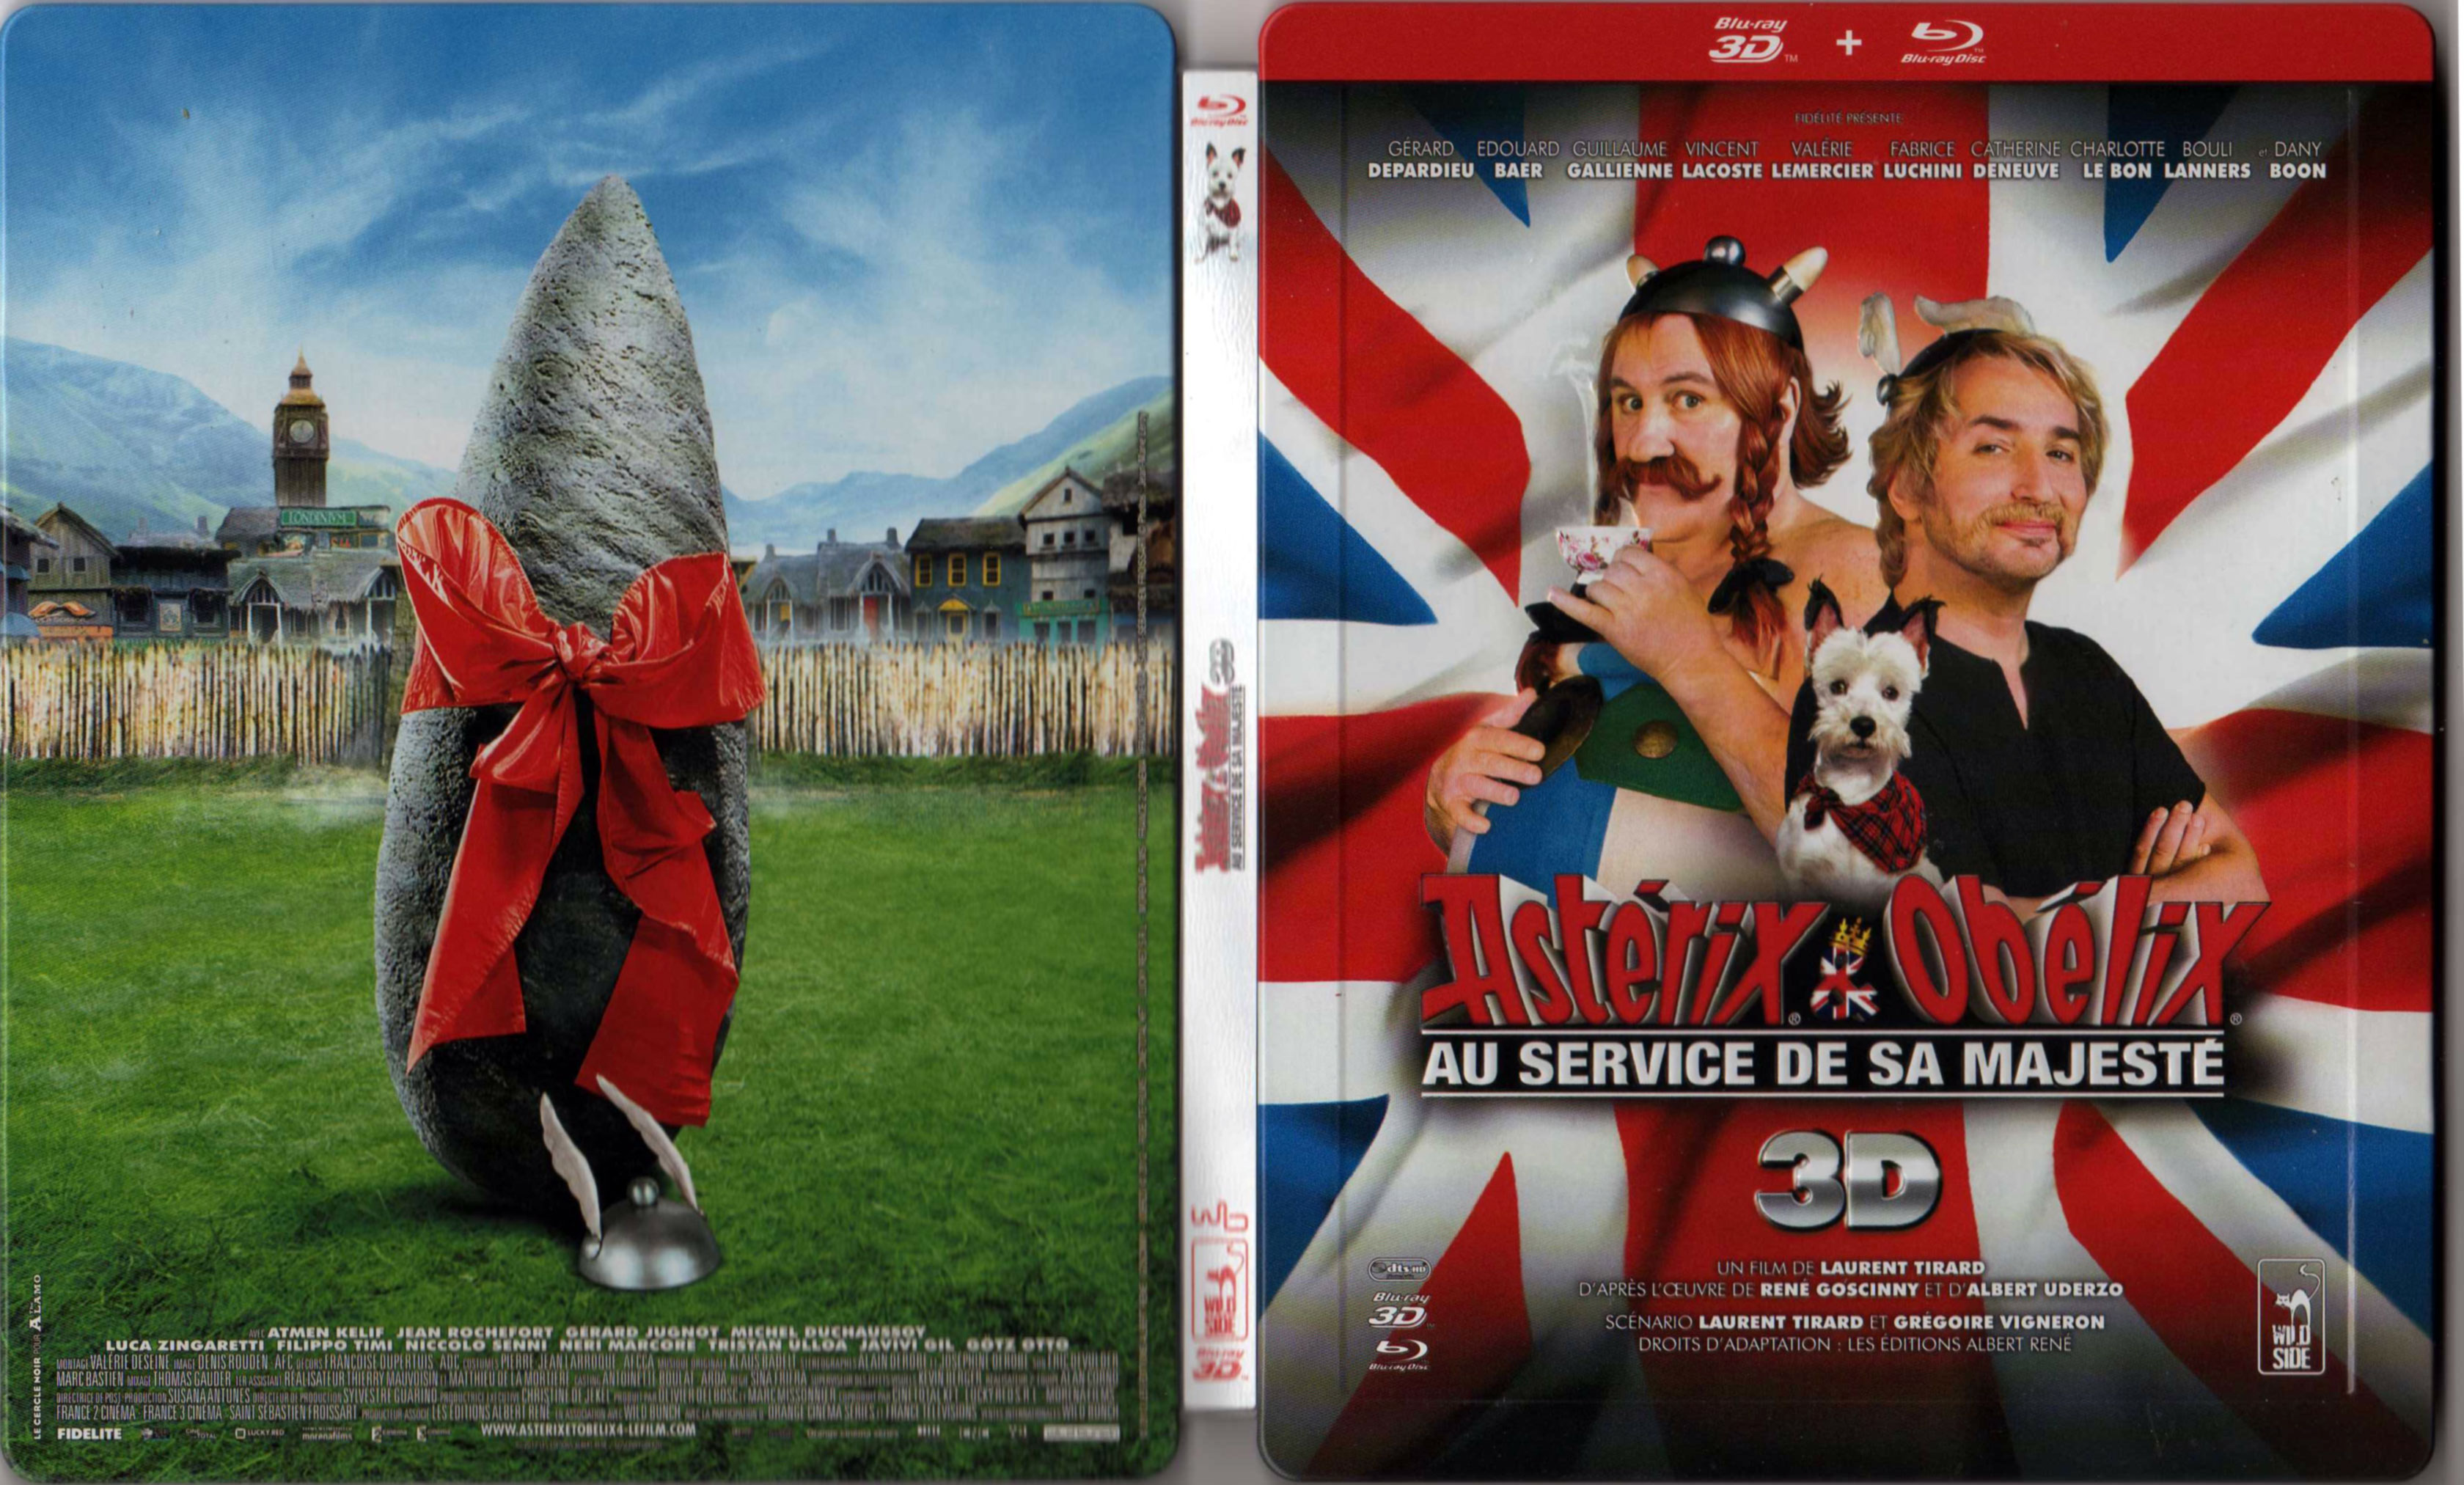 Jaquette DVD Astrix et Oblix Au service de sa Majest (BLU-RAY)